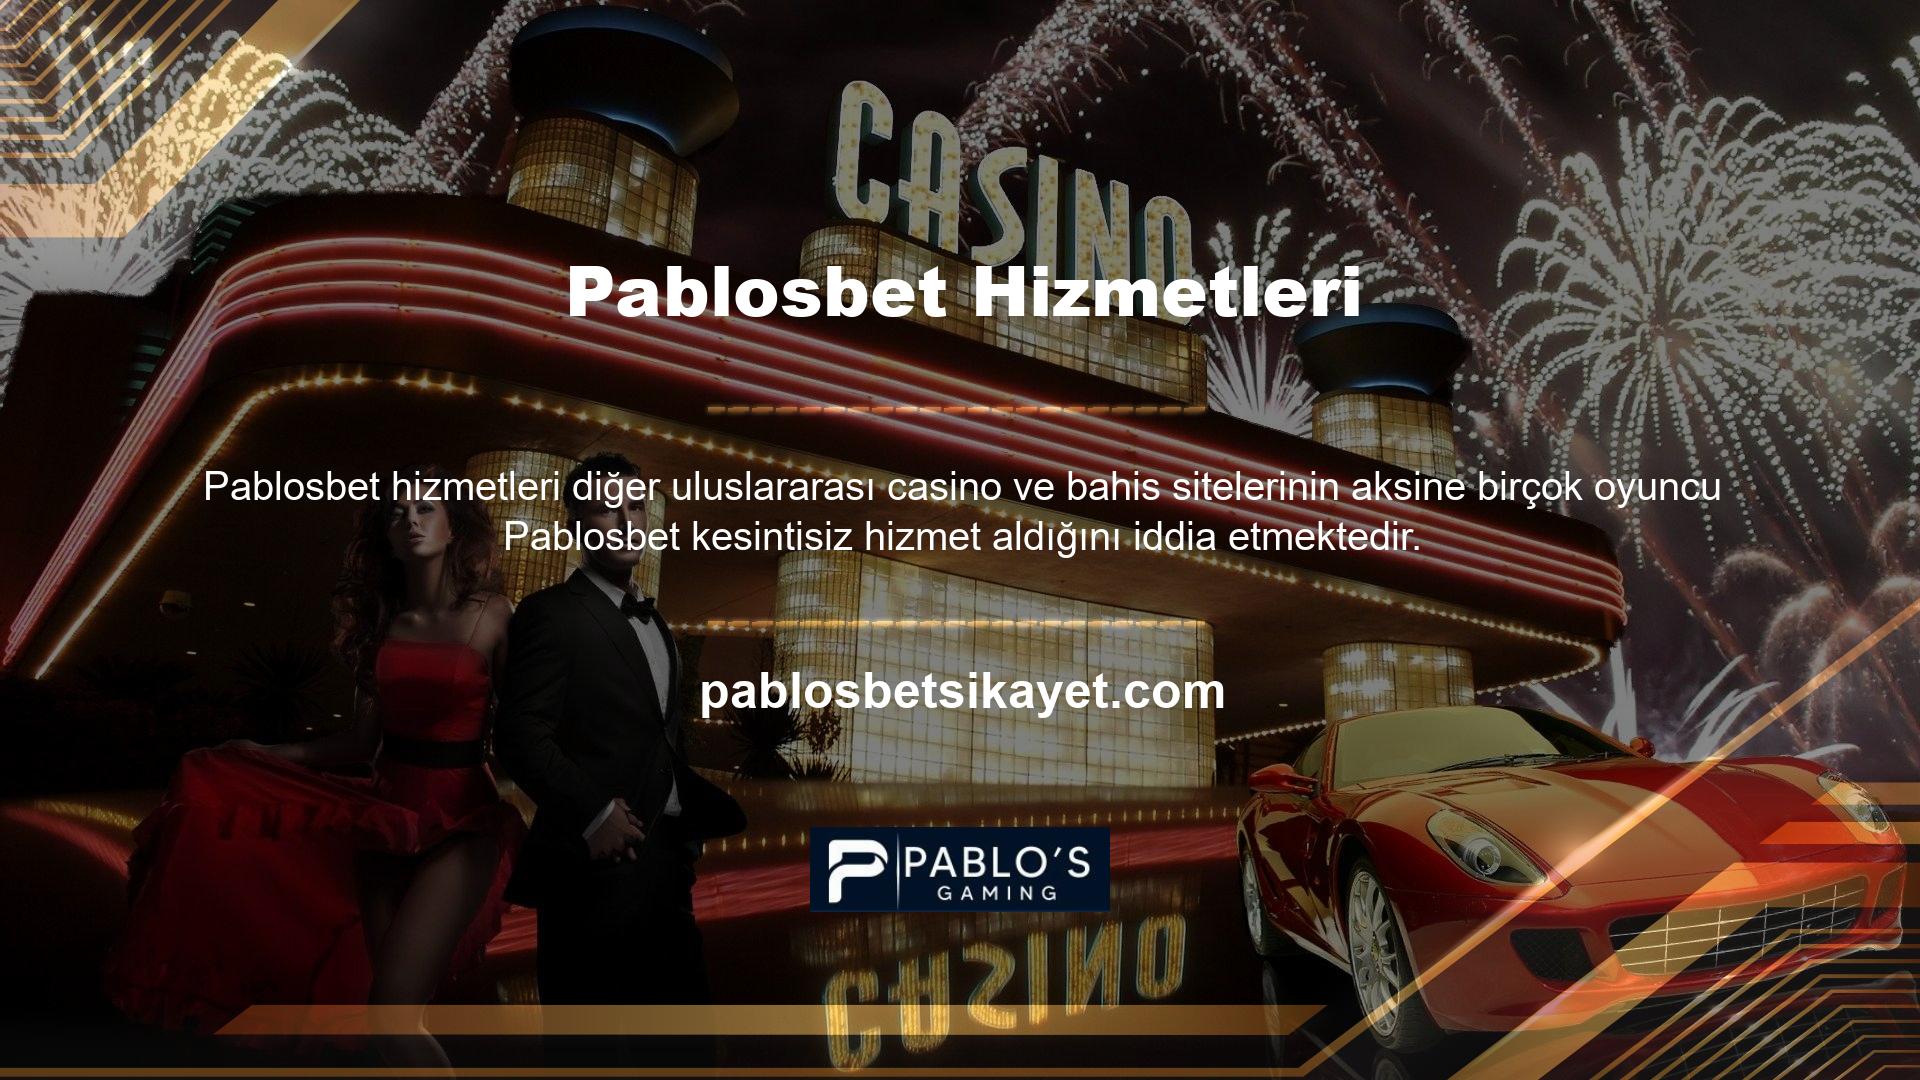 Sitenin internet adresinin engellenmesinin hemen ardından casino sitesi Pablosbet yeni adresine taşınarak kullanıcıları başarılı bir şekilde memnun etti